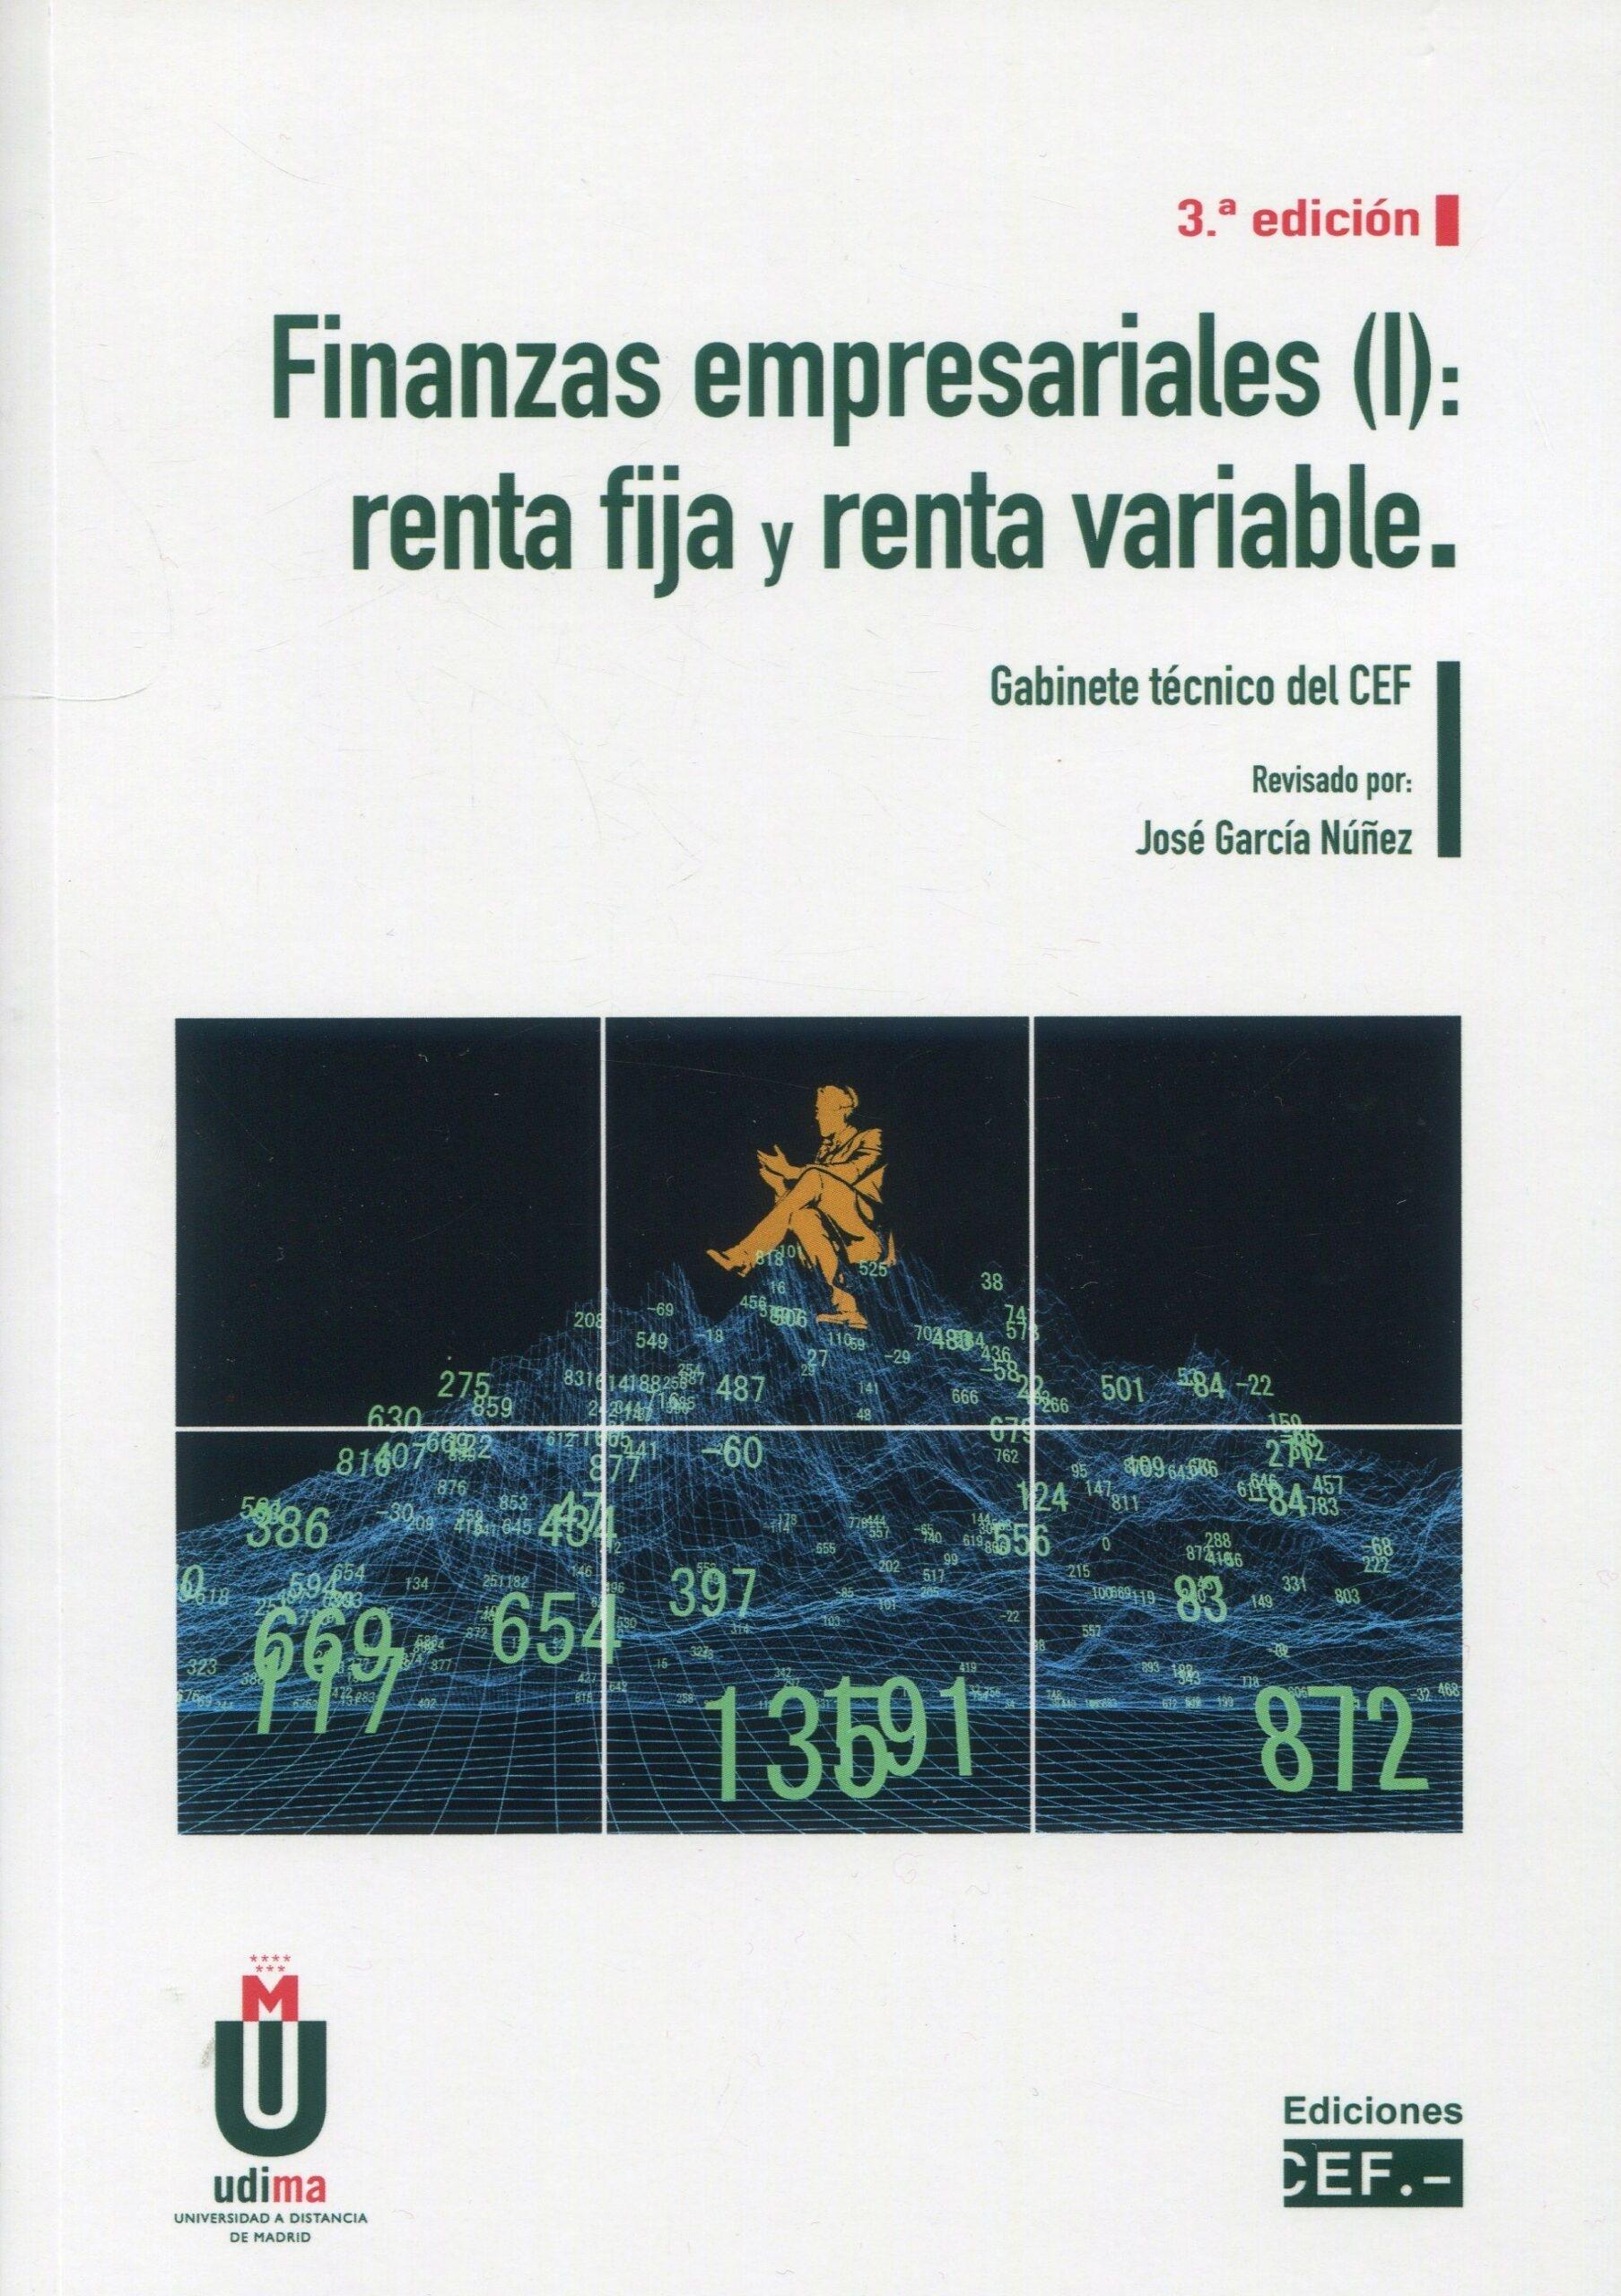 Finanzas empresariales (I) "Renta fija y renta variable"